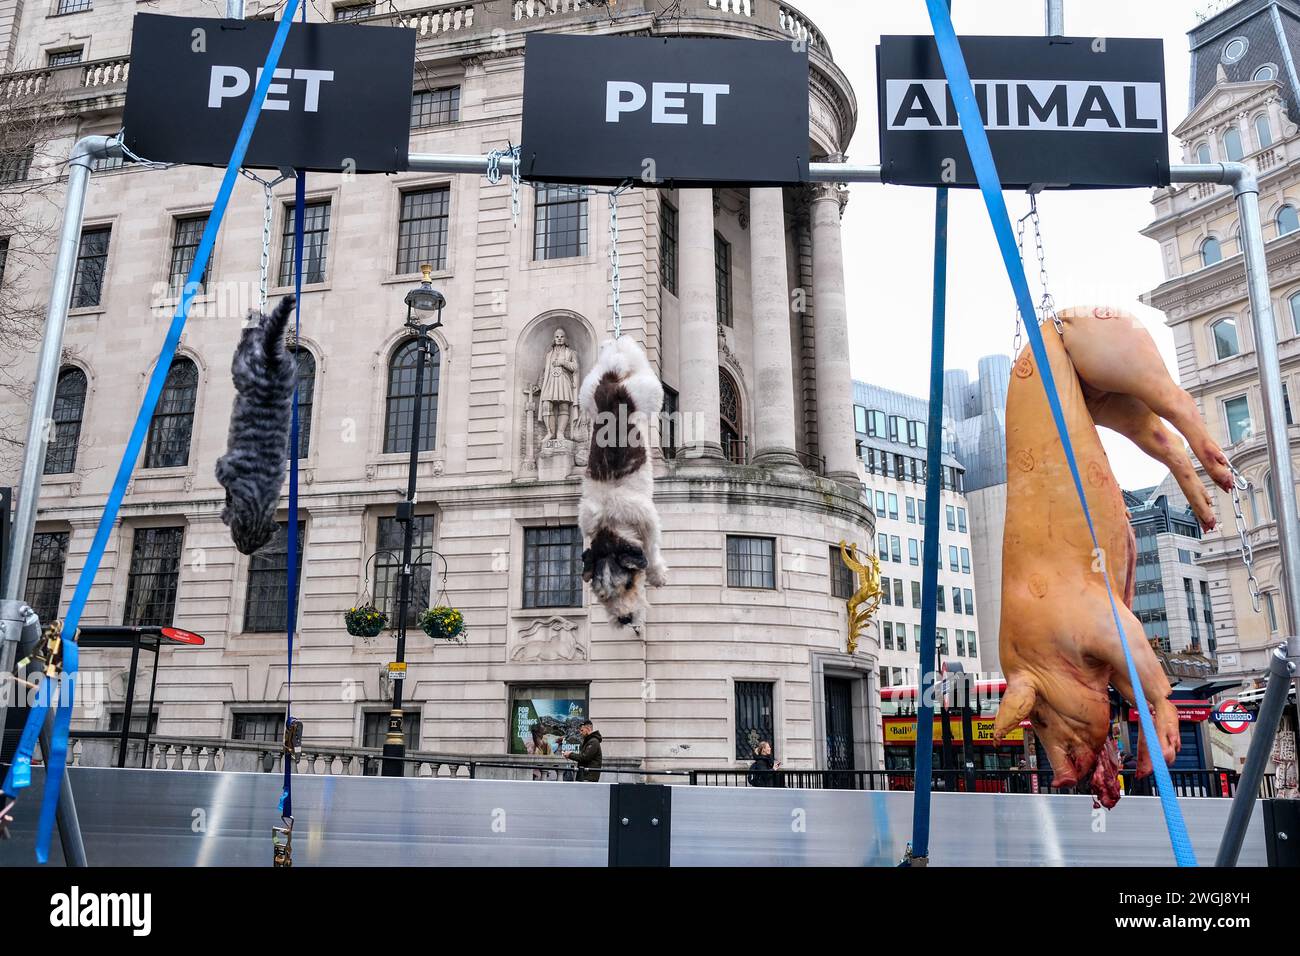 Londra, Regno Unito, 5 febbraio 2024. Organizzazione per i diritti degli animali Viva! promuove una nuova campagna con un maiale, un cane e un gatto morti, guidati dietro un furgone, sfidando il modo in cui vediamo e trattiamo diverse specie. Credito: Fotografia dell'undicesima ora/Alamy Live News Foto Stock